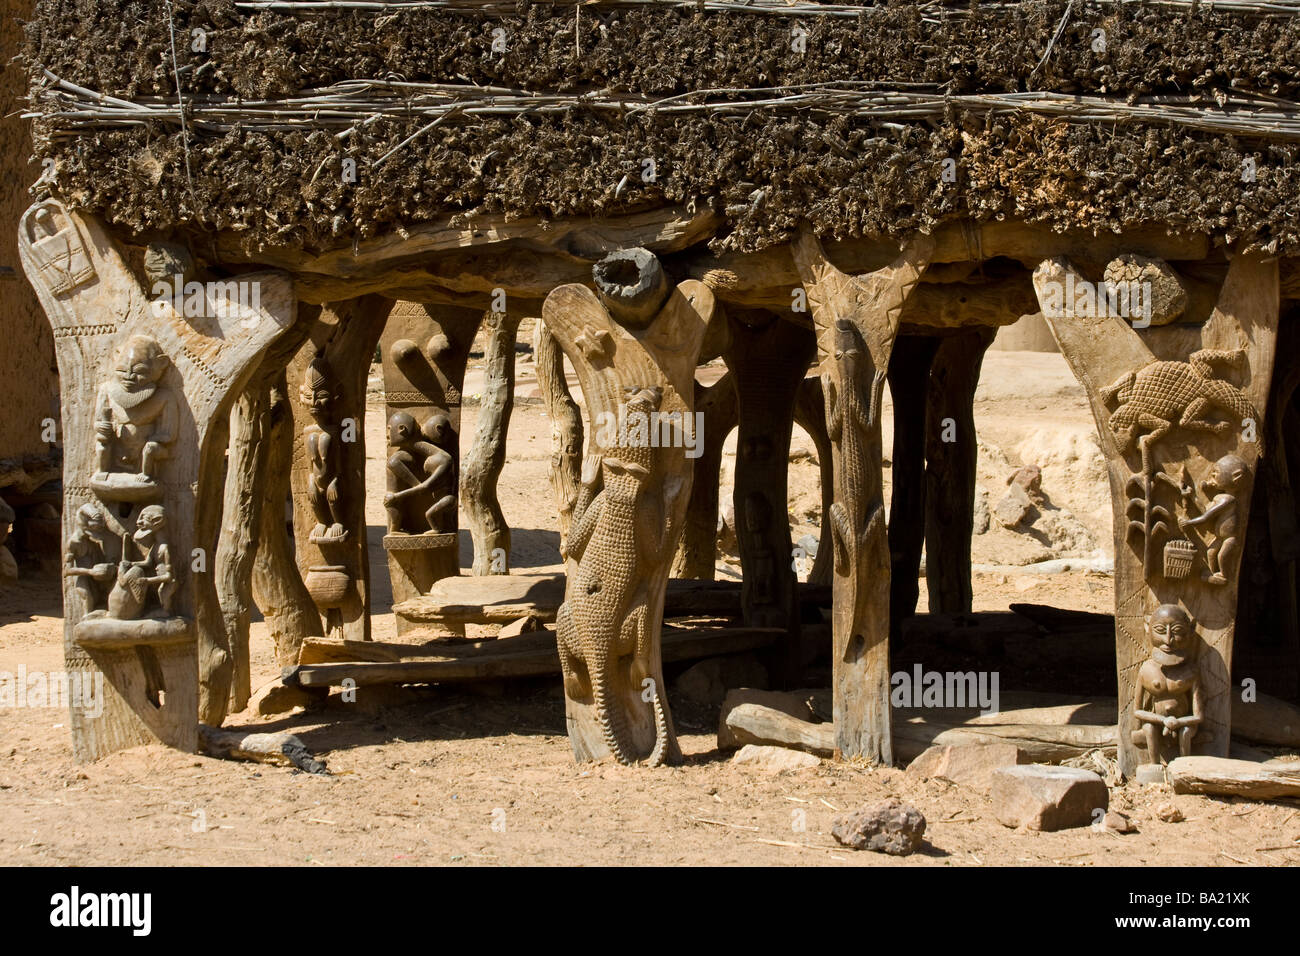 Sur les sculptures toguna ou cas à palabres le principal lieu de rencontre d'un village Dogon Village Kundu dans le pays Dogon Mali Afrique Banque D'Images